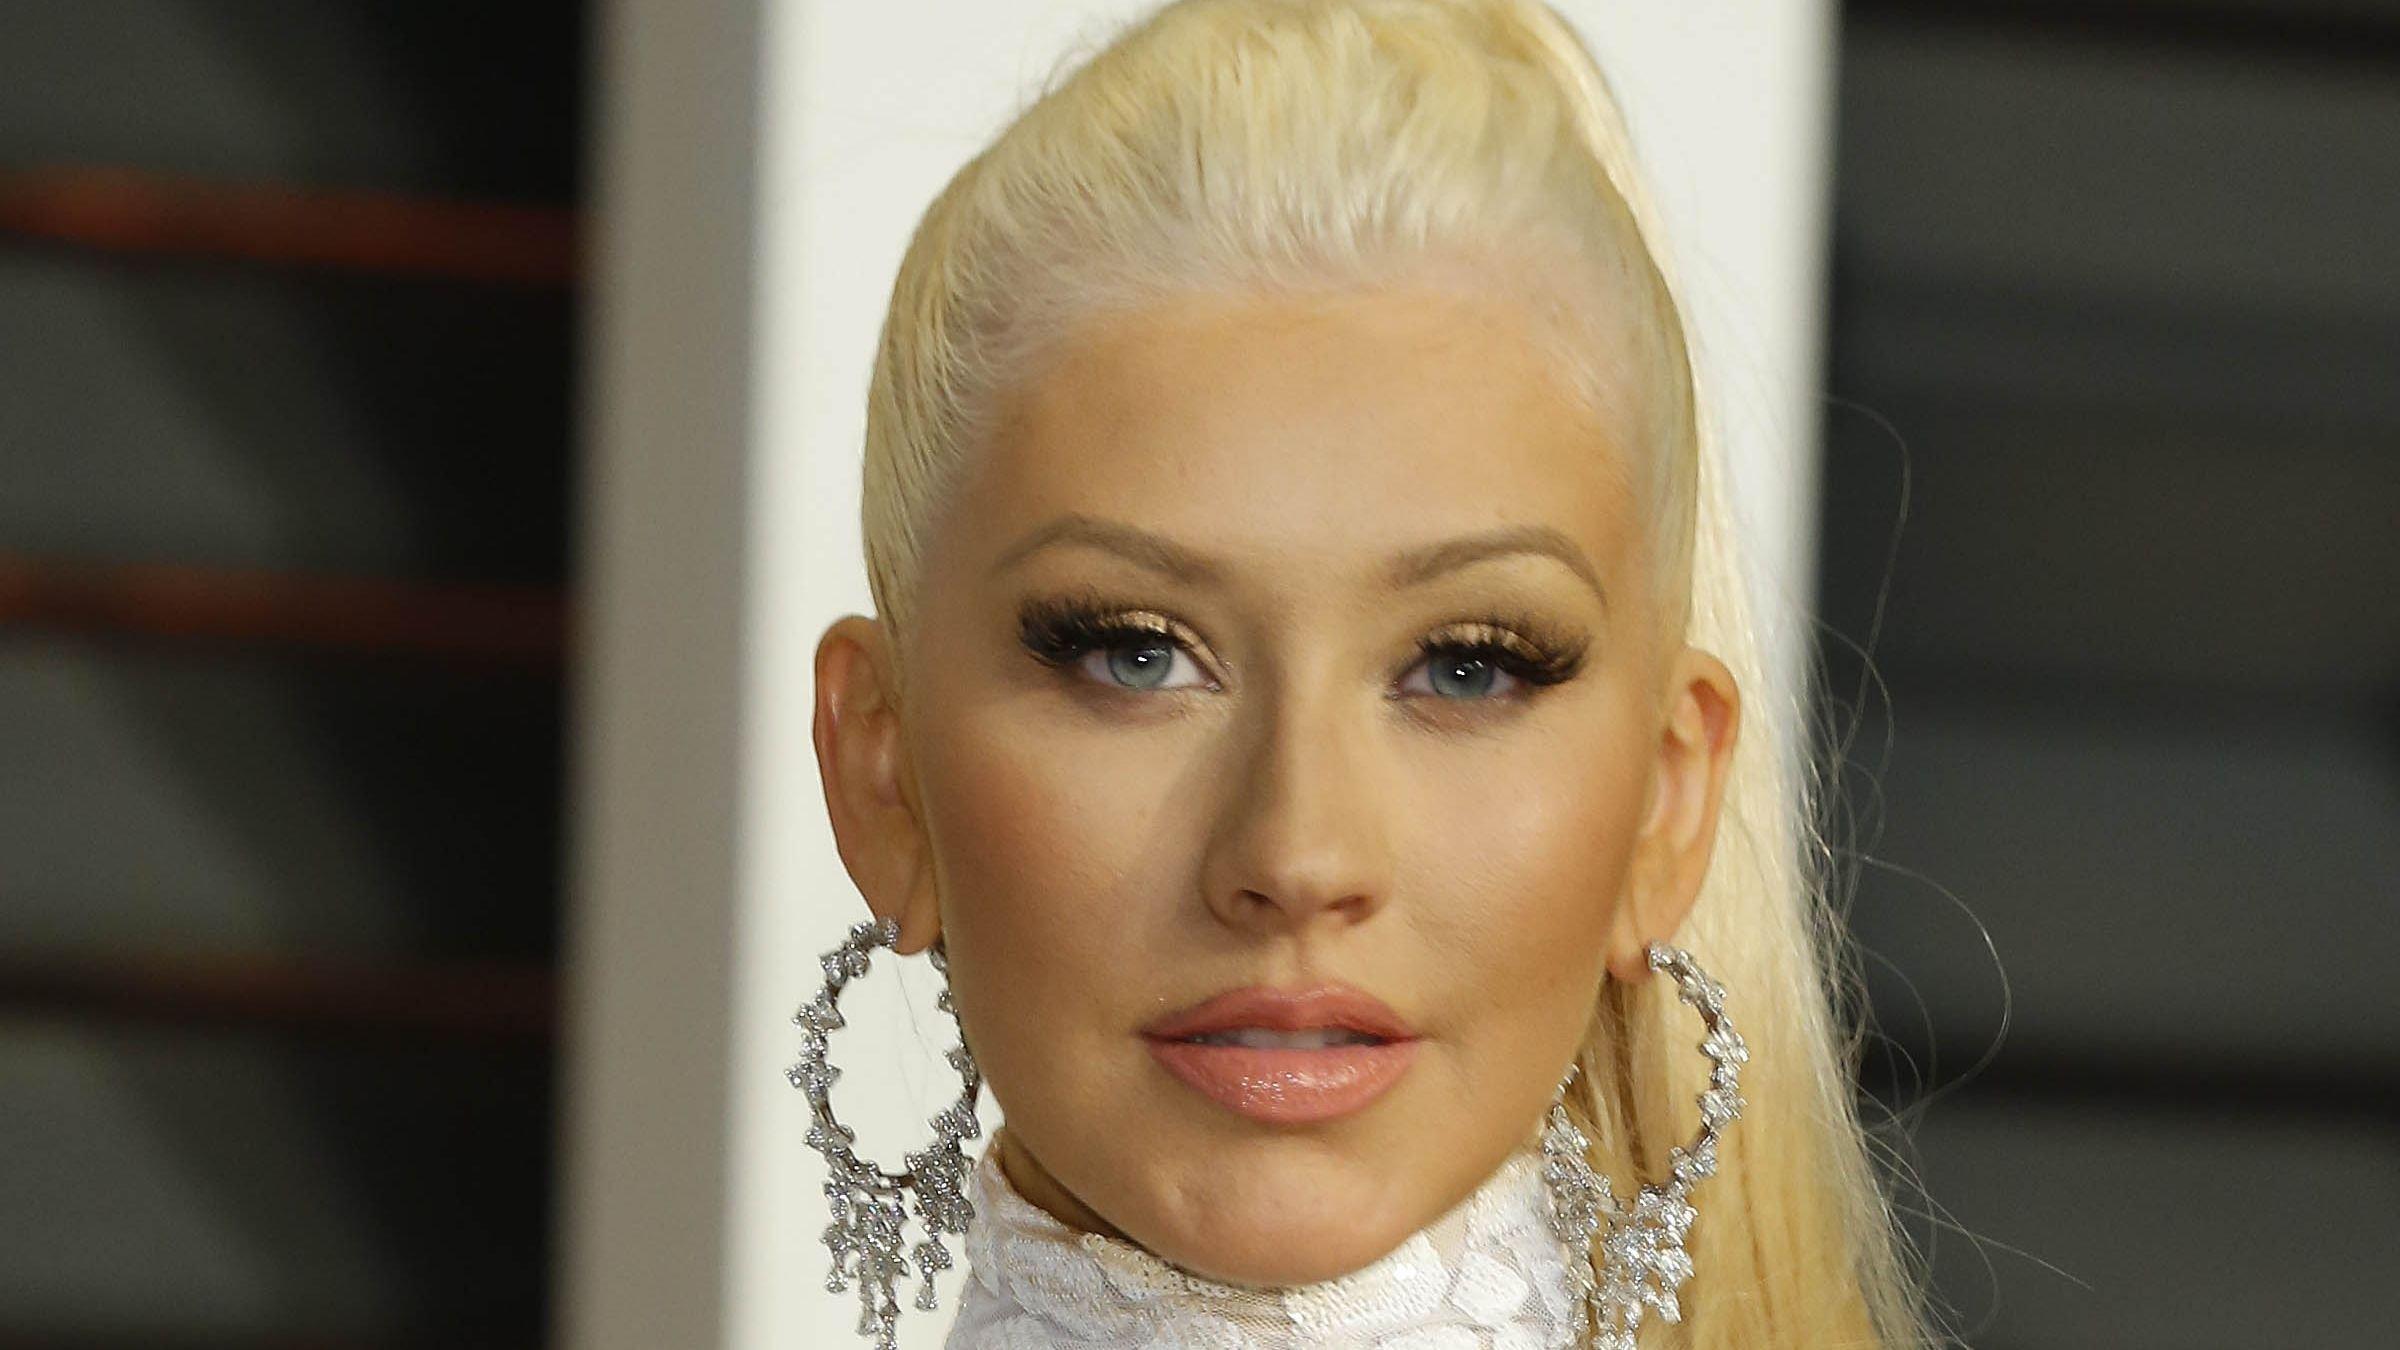 Close up of Christina Aguilera's face